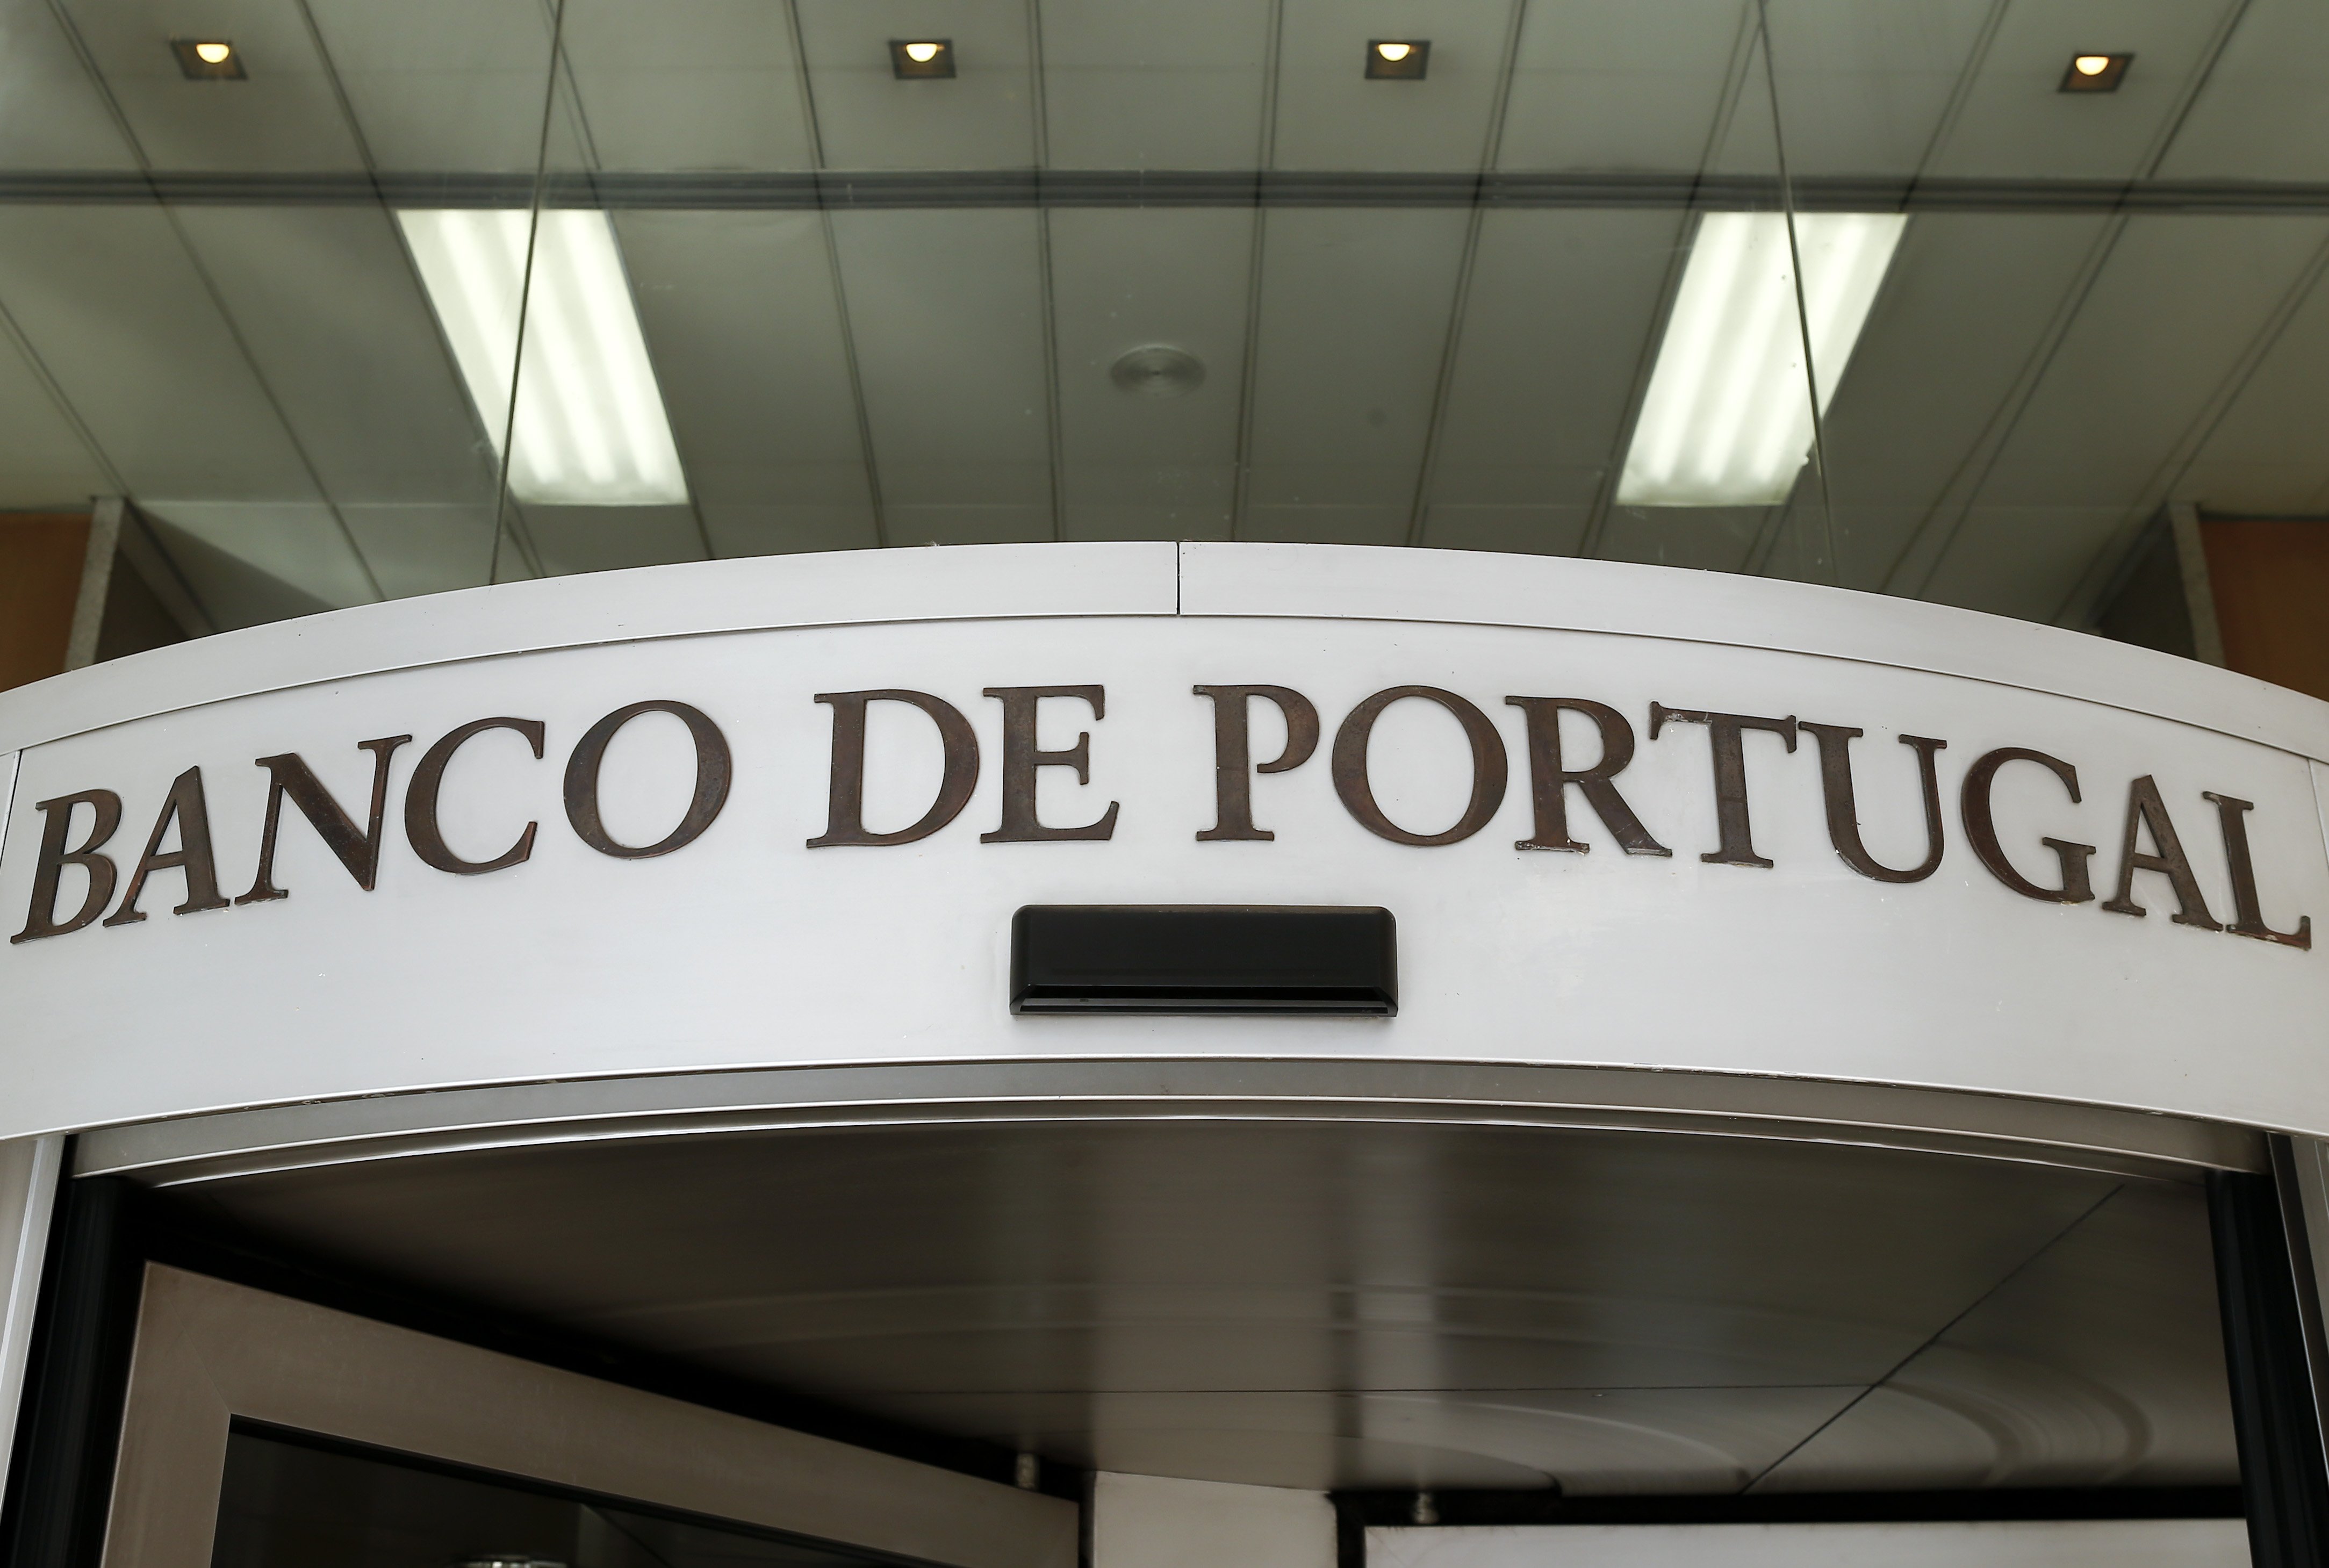 Banco de Portugal entregou 525 ME de dividendos ao Estado, maior valor de sempre